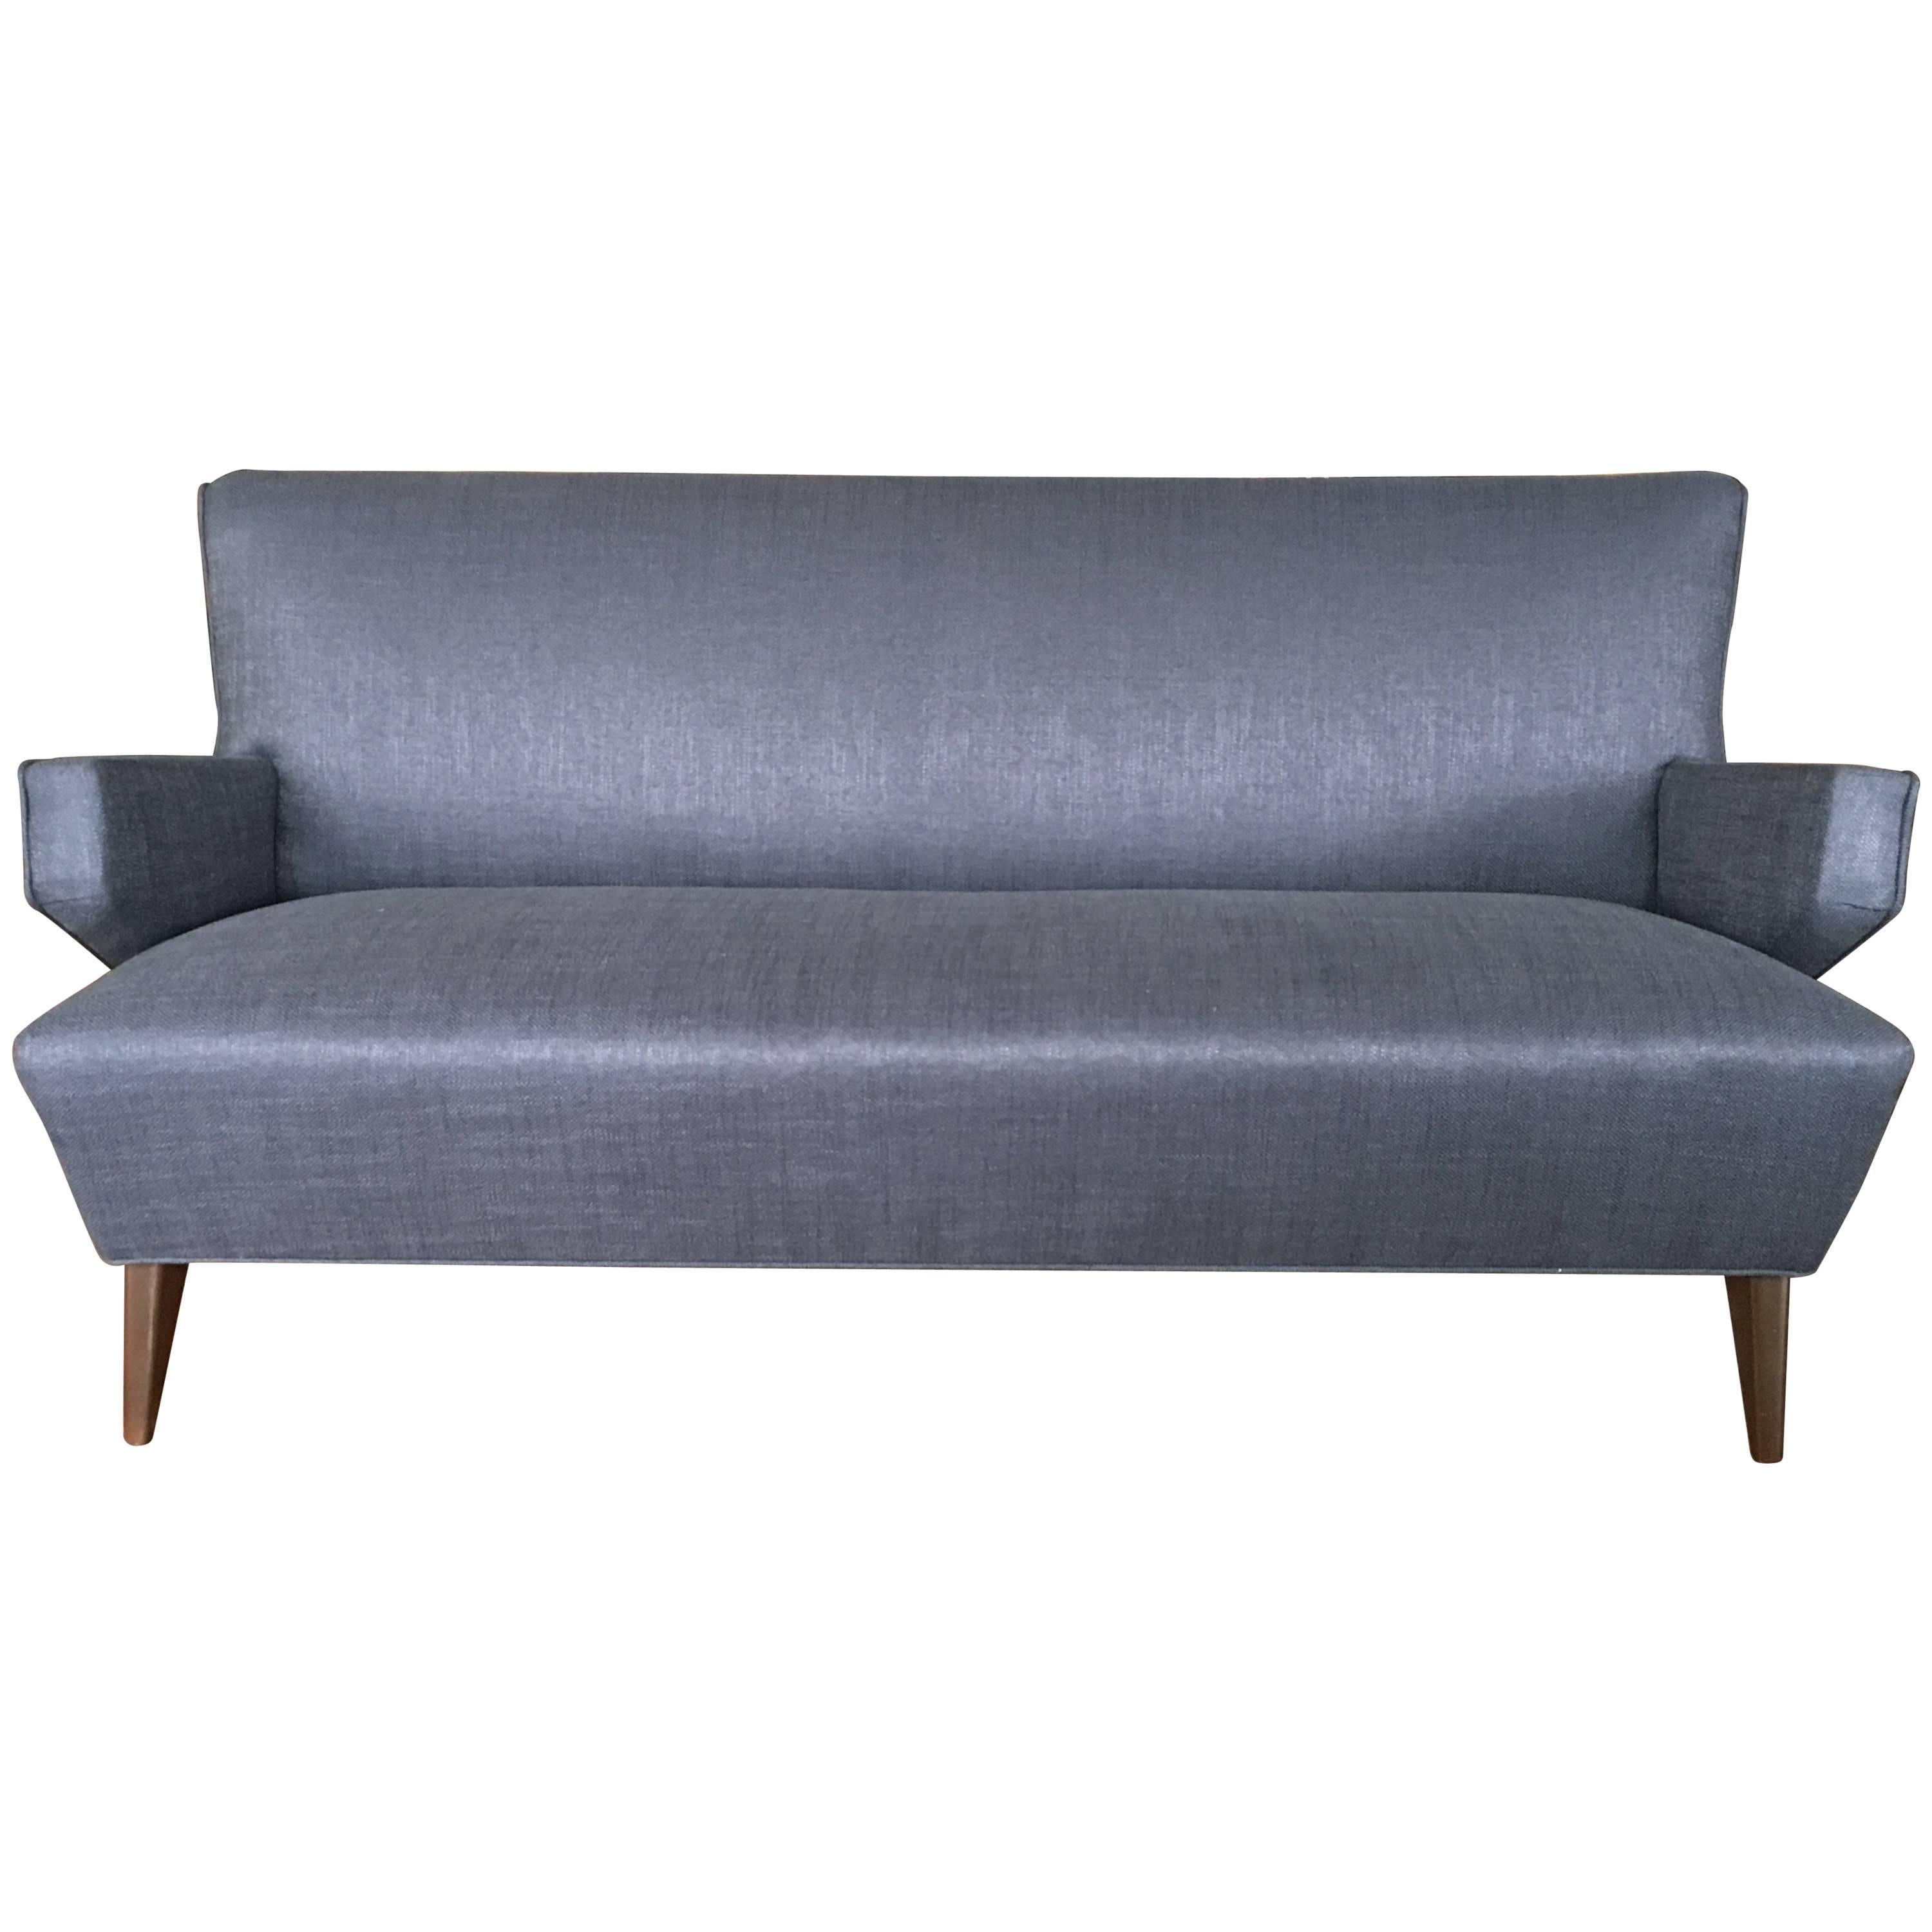 Scandinavian Modern Sofa by Jens Risom